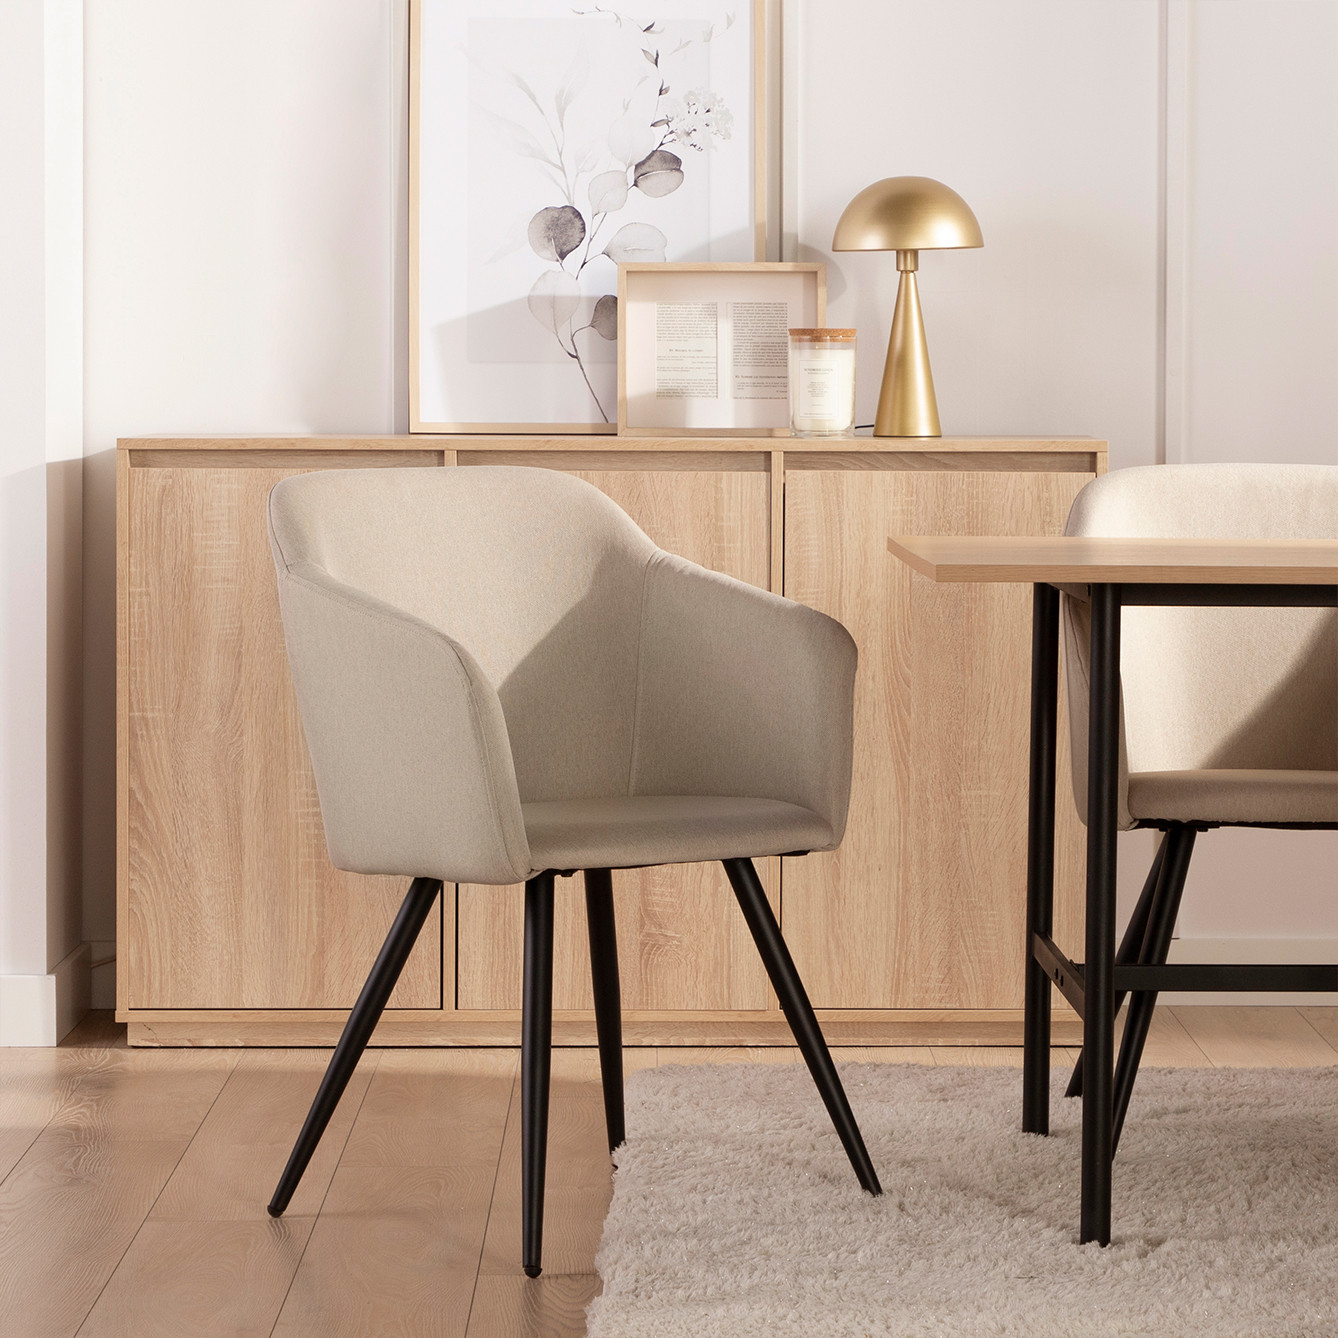 La silla de comedor tapizada Liam es una silla de aire moderno ideal para los hogares más atrevidos. La combinación de su asiento de poliéster fabricado en una sola pieza y las patas metálicas negras